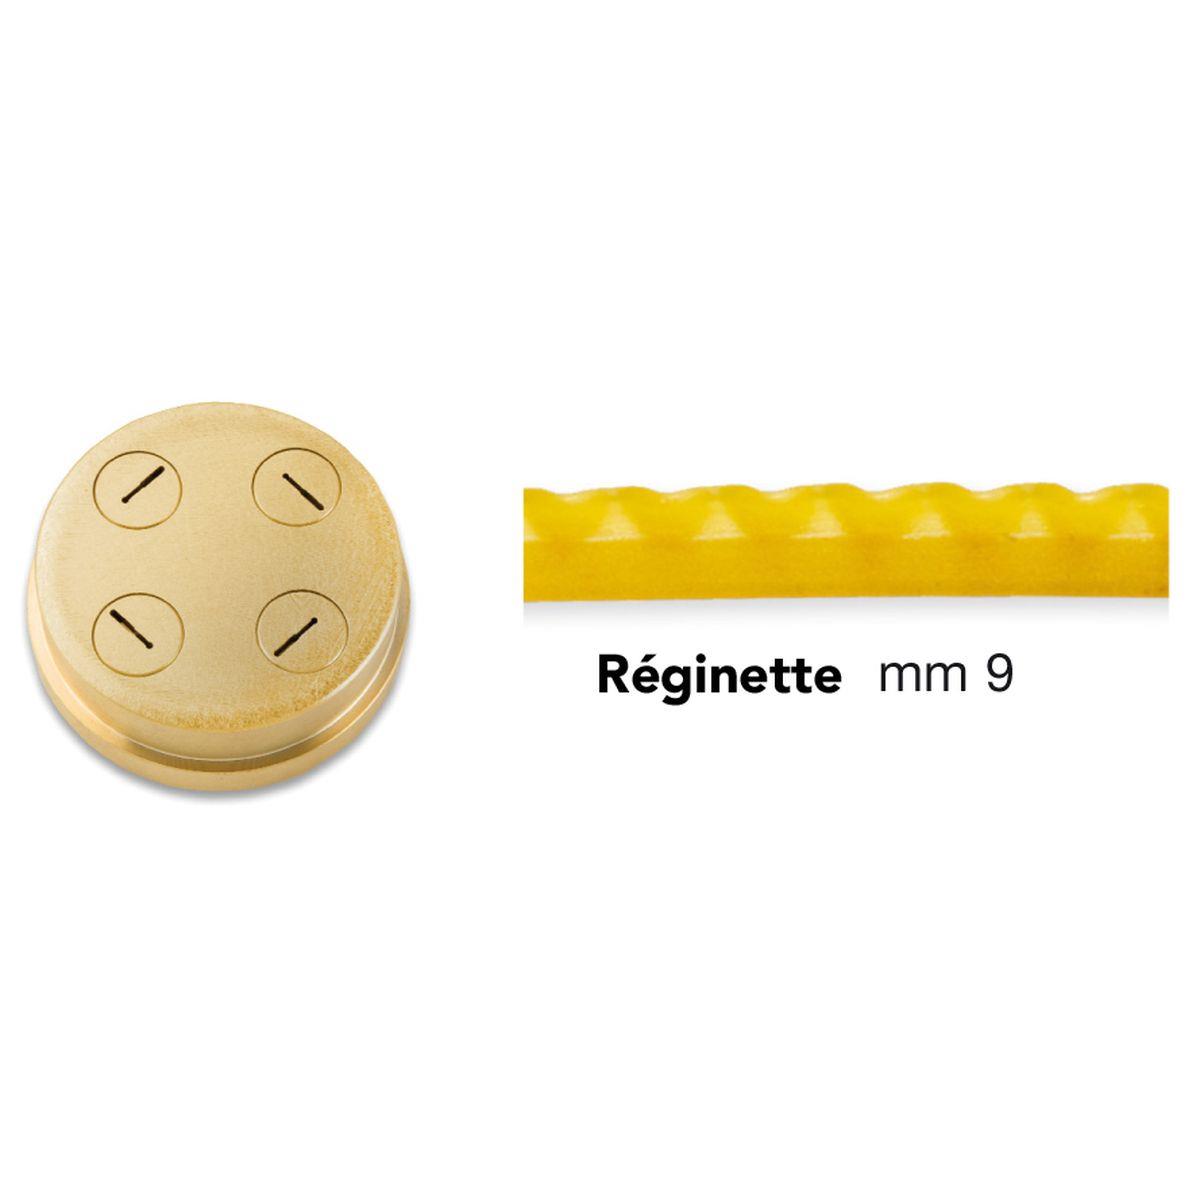 bronze die 284 for reginette for home chef pasta machine